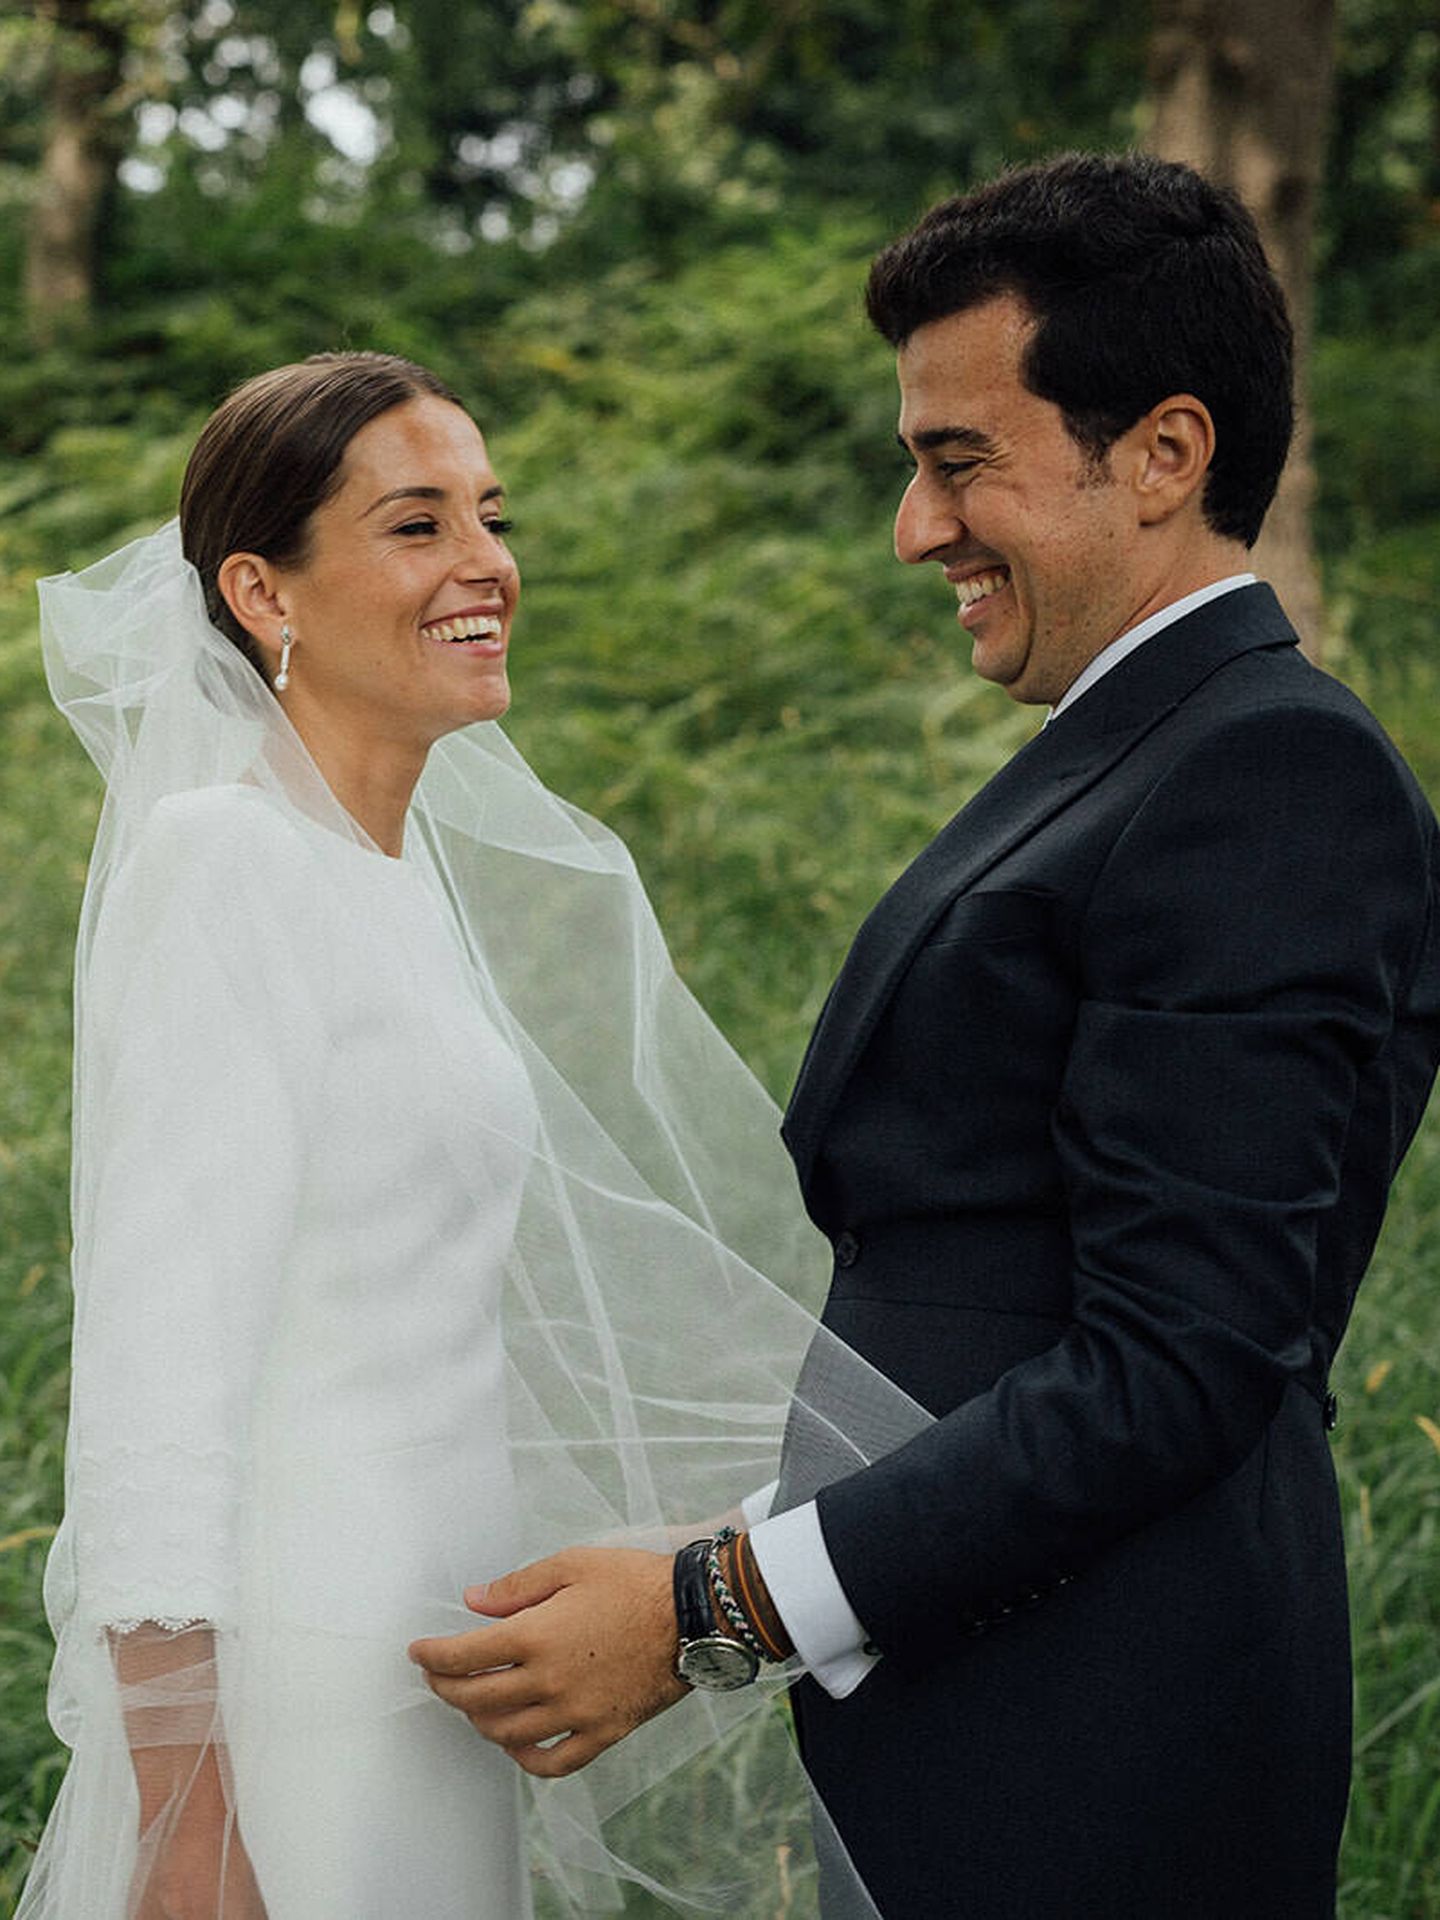 La boda de Míriam y José Luis. (JFK Imagen Social)